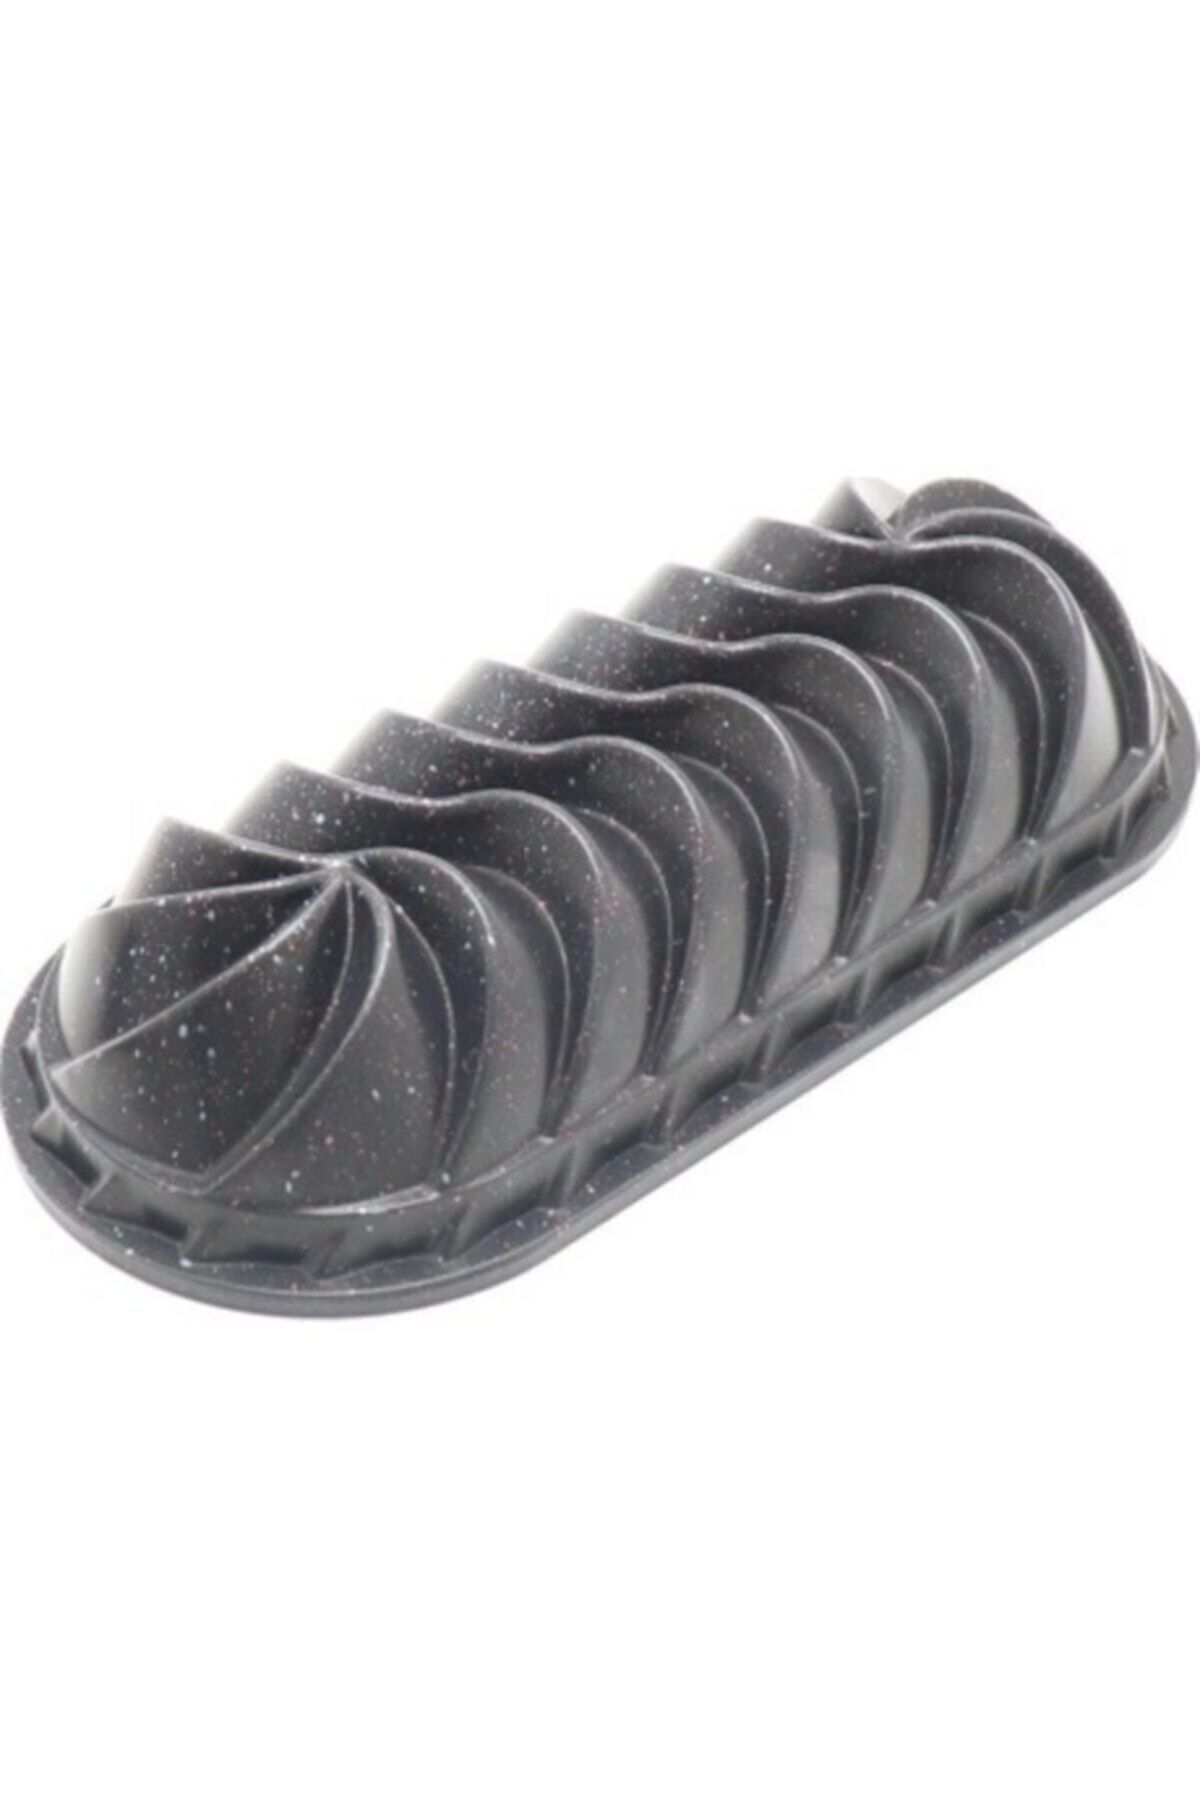 ThermoAD Granit Baton Döküm Kek Kalıbı Siyah